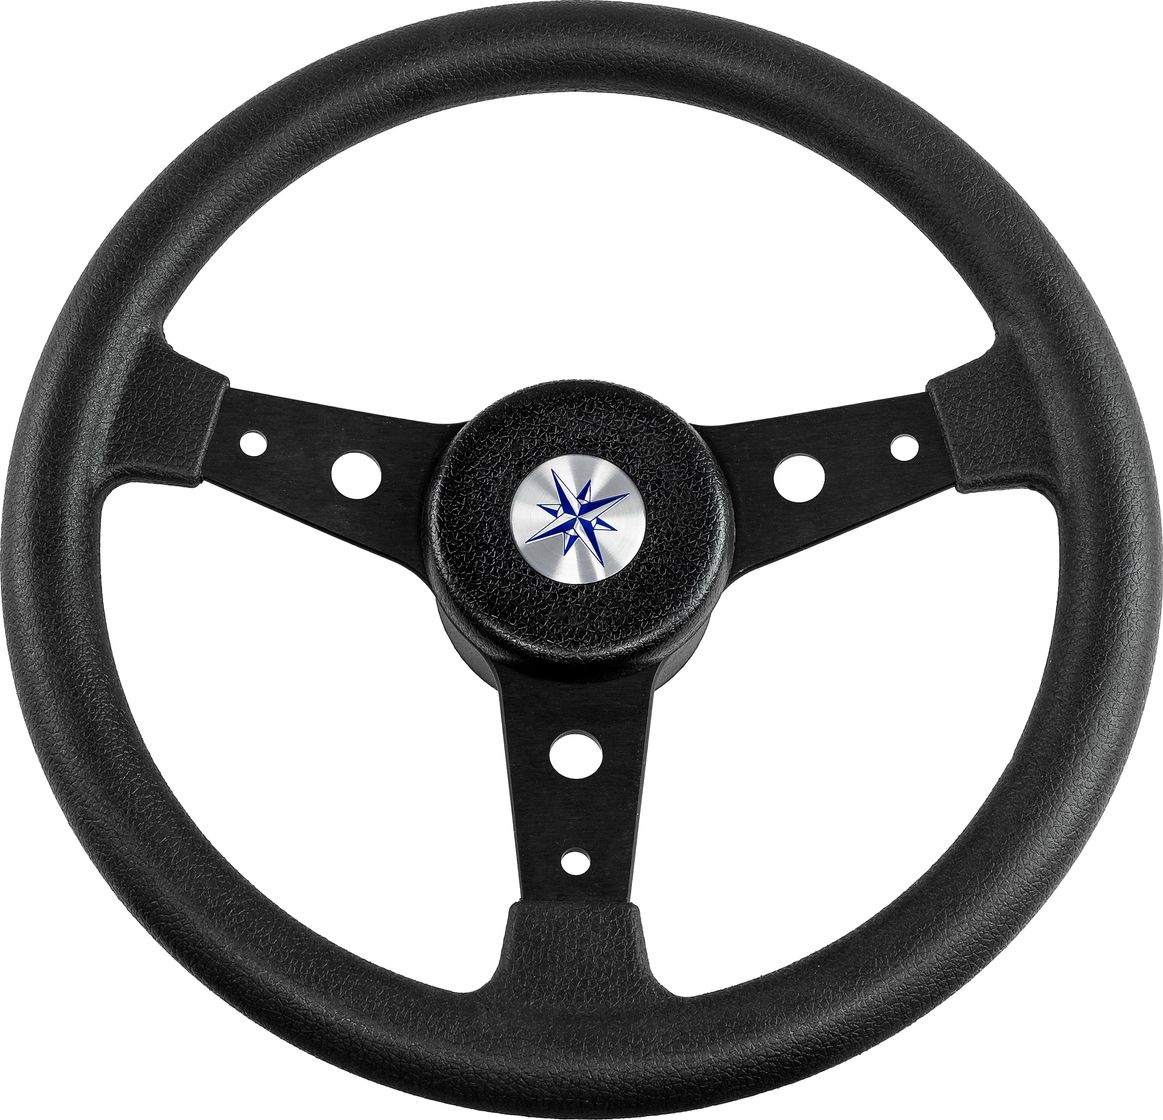 Рулевое колесо DELFINO обод и спицы черные д. 340 мм VN70402-01 рулевое колесо delfino обод спицы серебряные д 310 мм vn70103 01